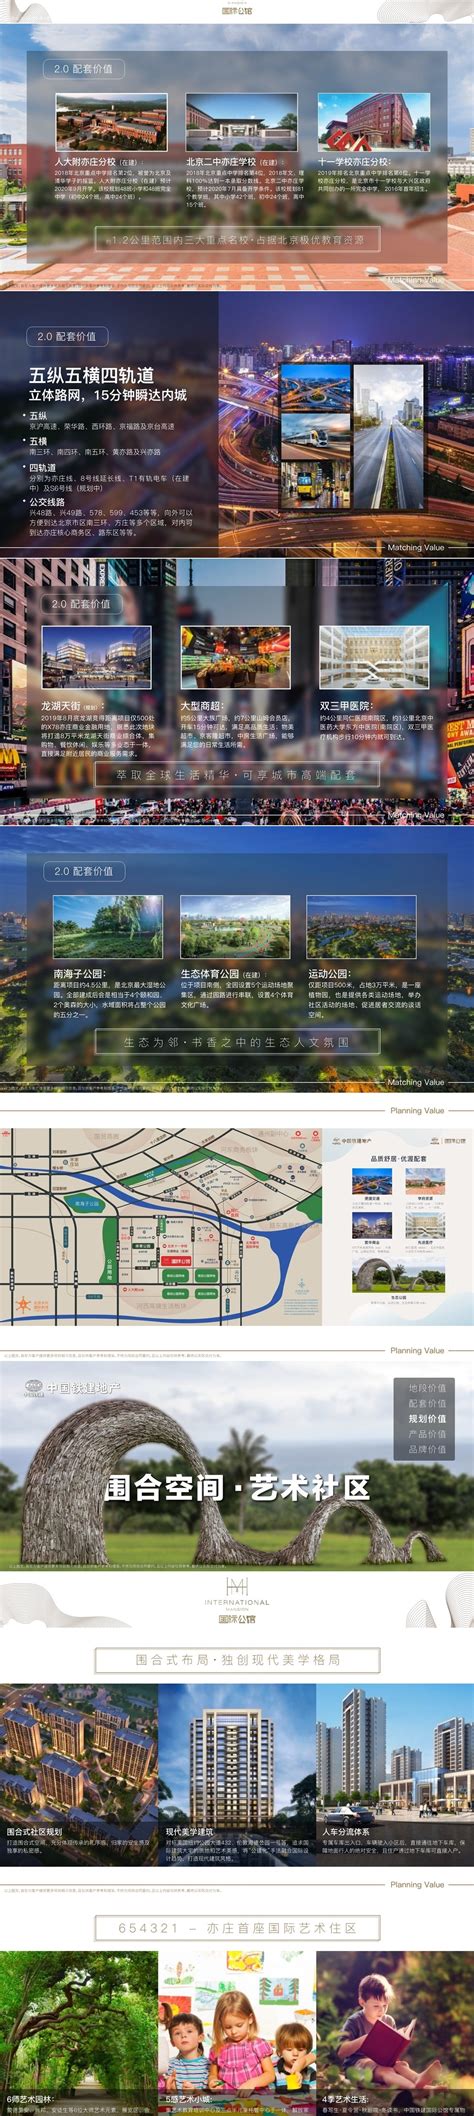 北京亦庄入选全国创新驱动示范市建设名单_北京时间新闻